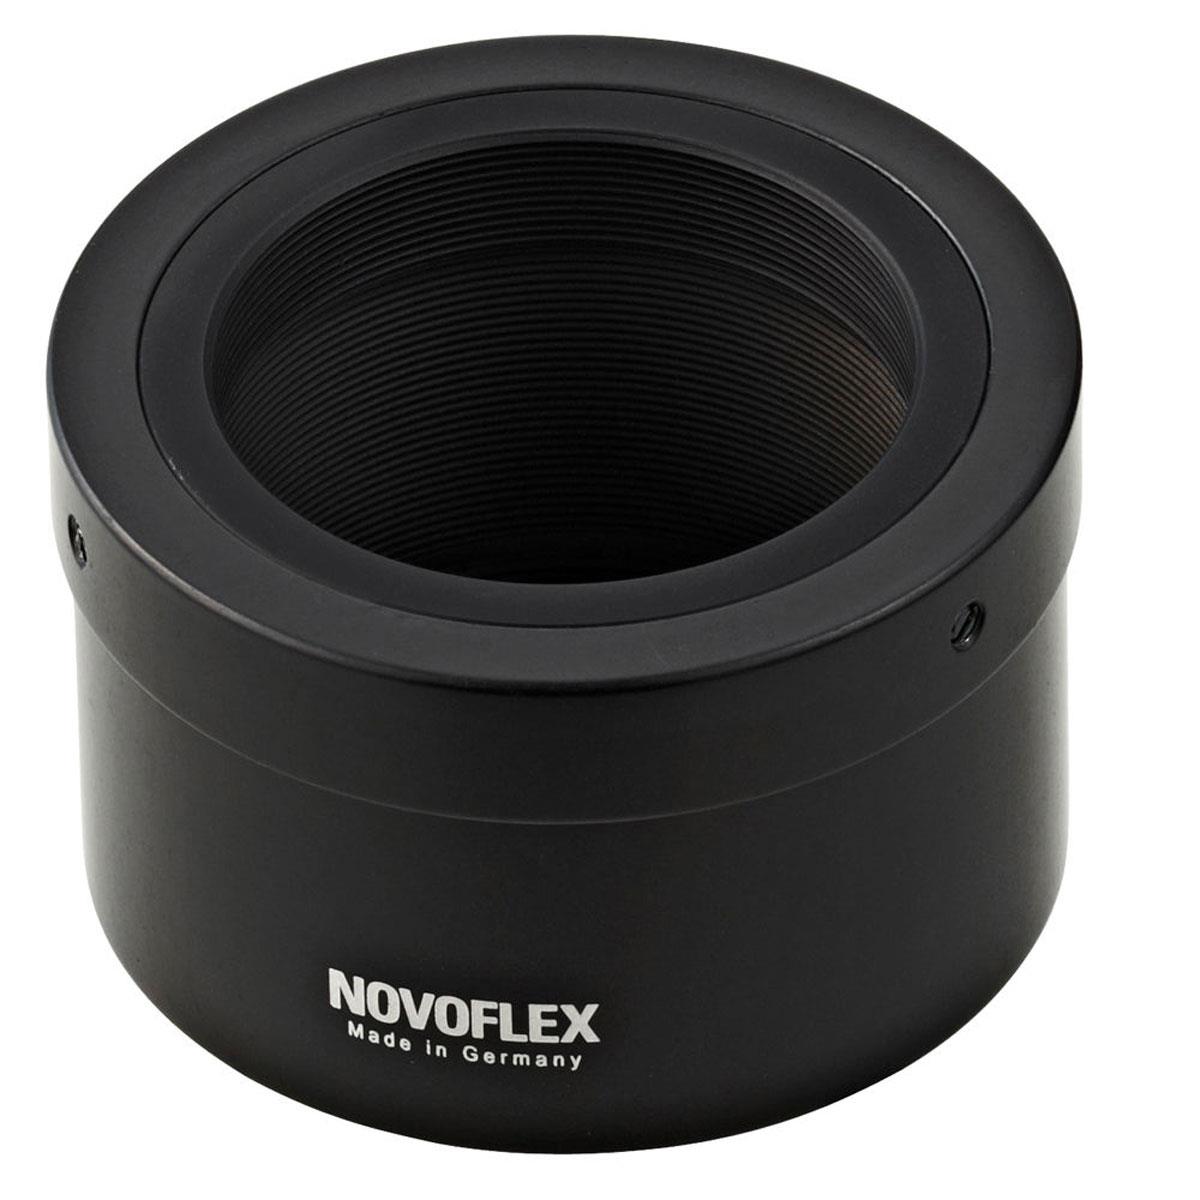 Image of Novoflex Adapter for T2 Lenses to Nikon 1 Cameras